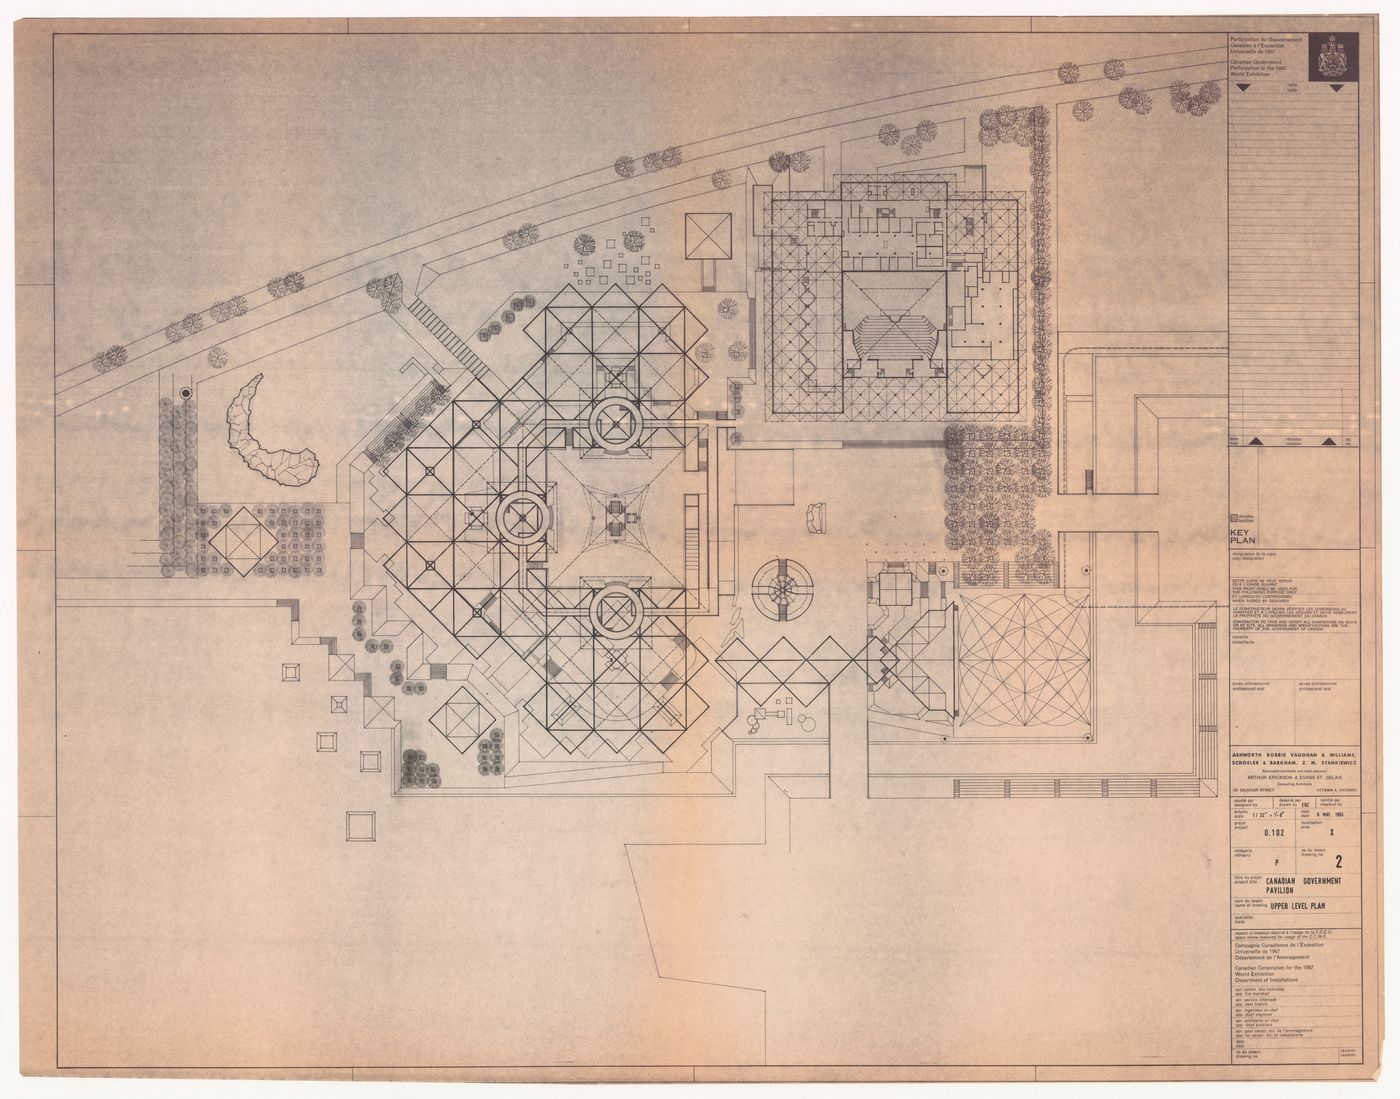 Plan for Canadian Federal Pavilion, Expo '67, Montréal, Québec